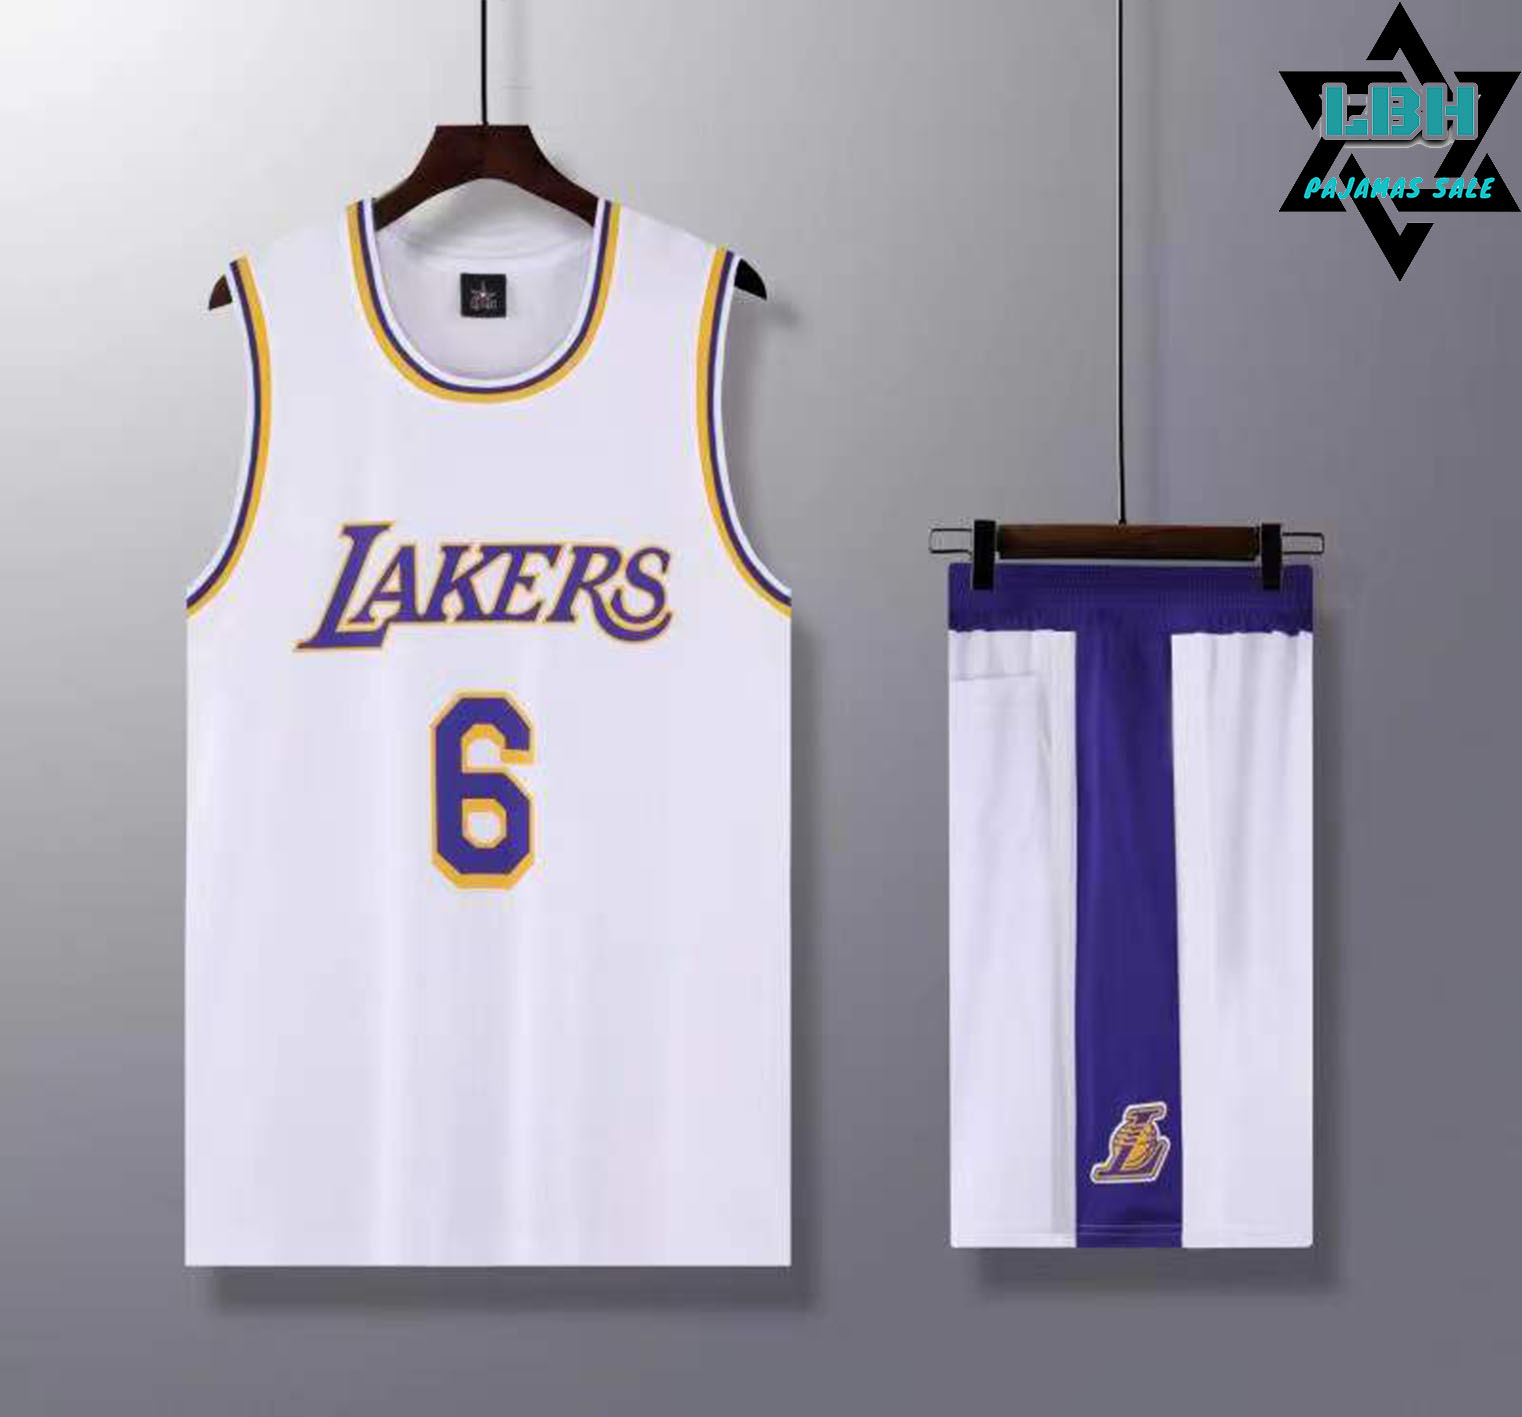 Zmleve Nba Kobe No.24 Bryant Basketball Jersey /Lakers Jersey Set,kids Adult Size